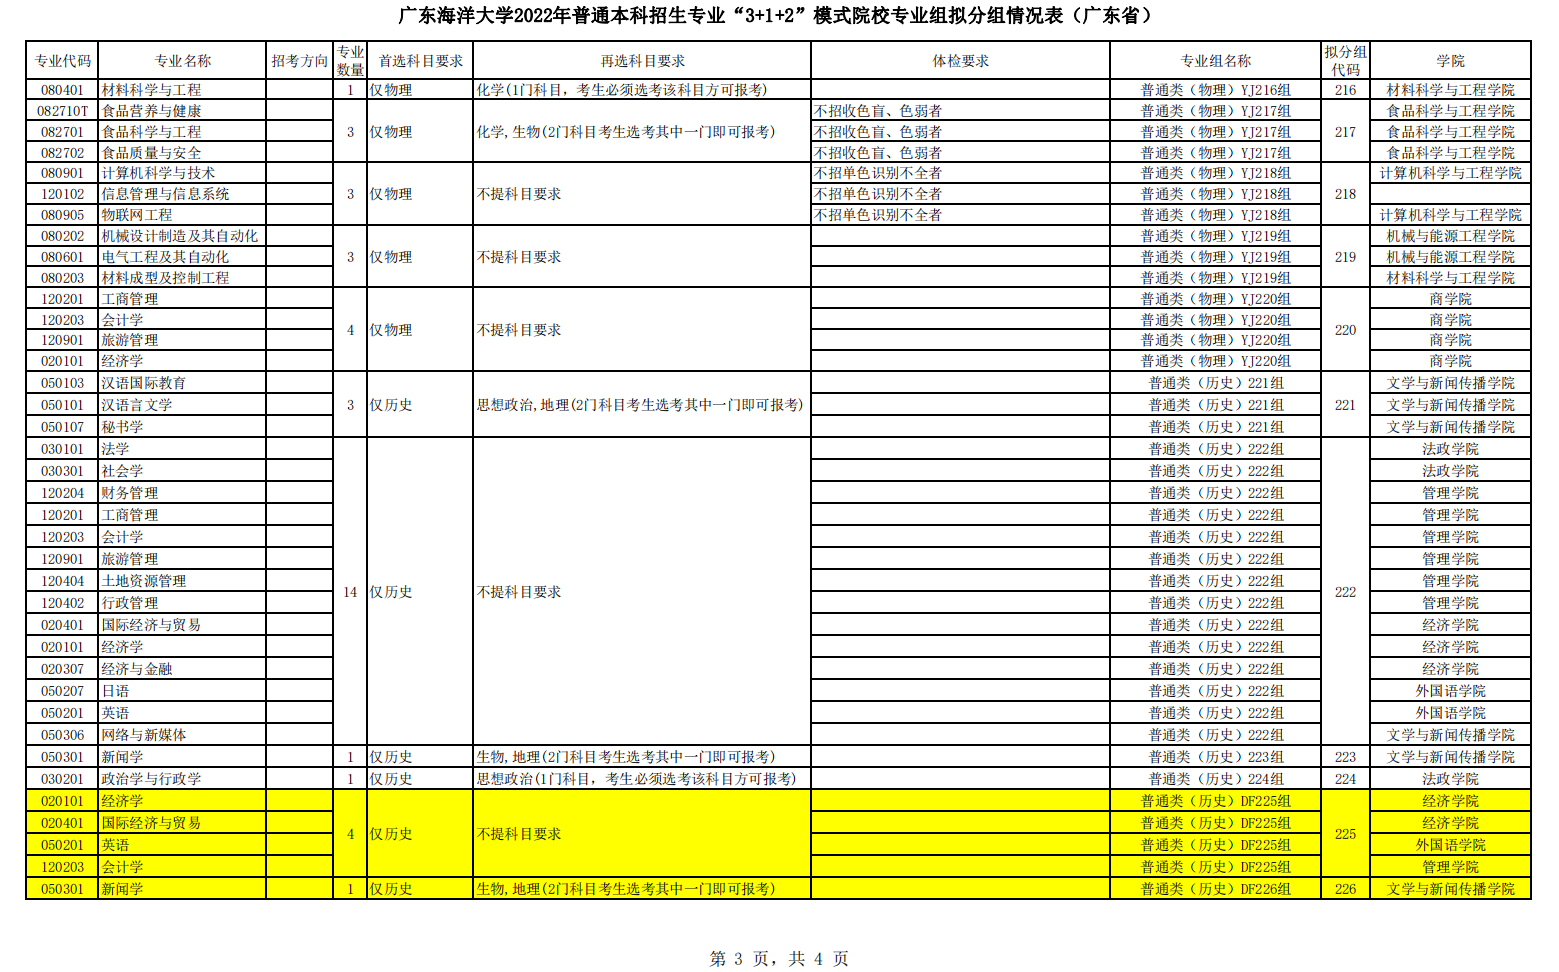 广东海洋大学2022年普通本科招生专业“3+1+2”模式院校专业组拟分组情况表（广东省）